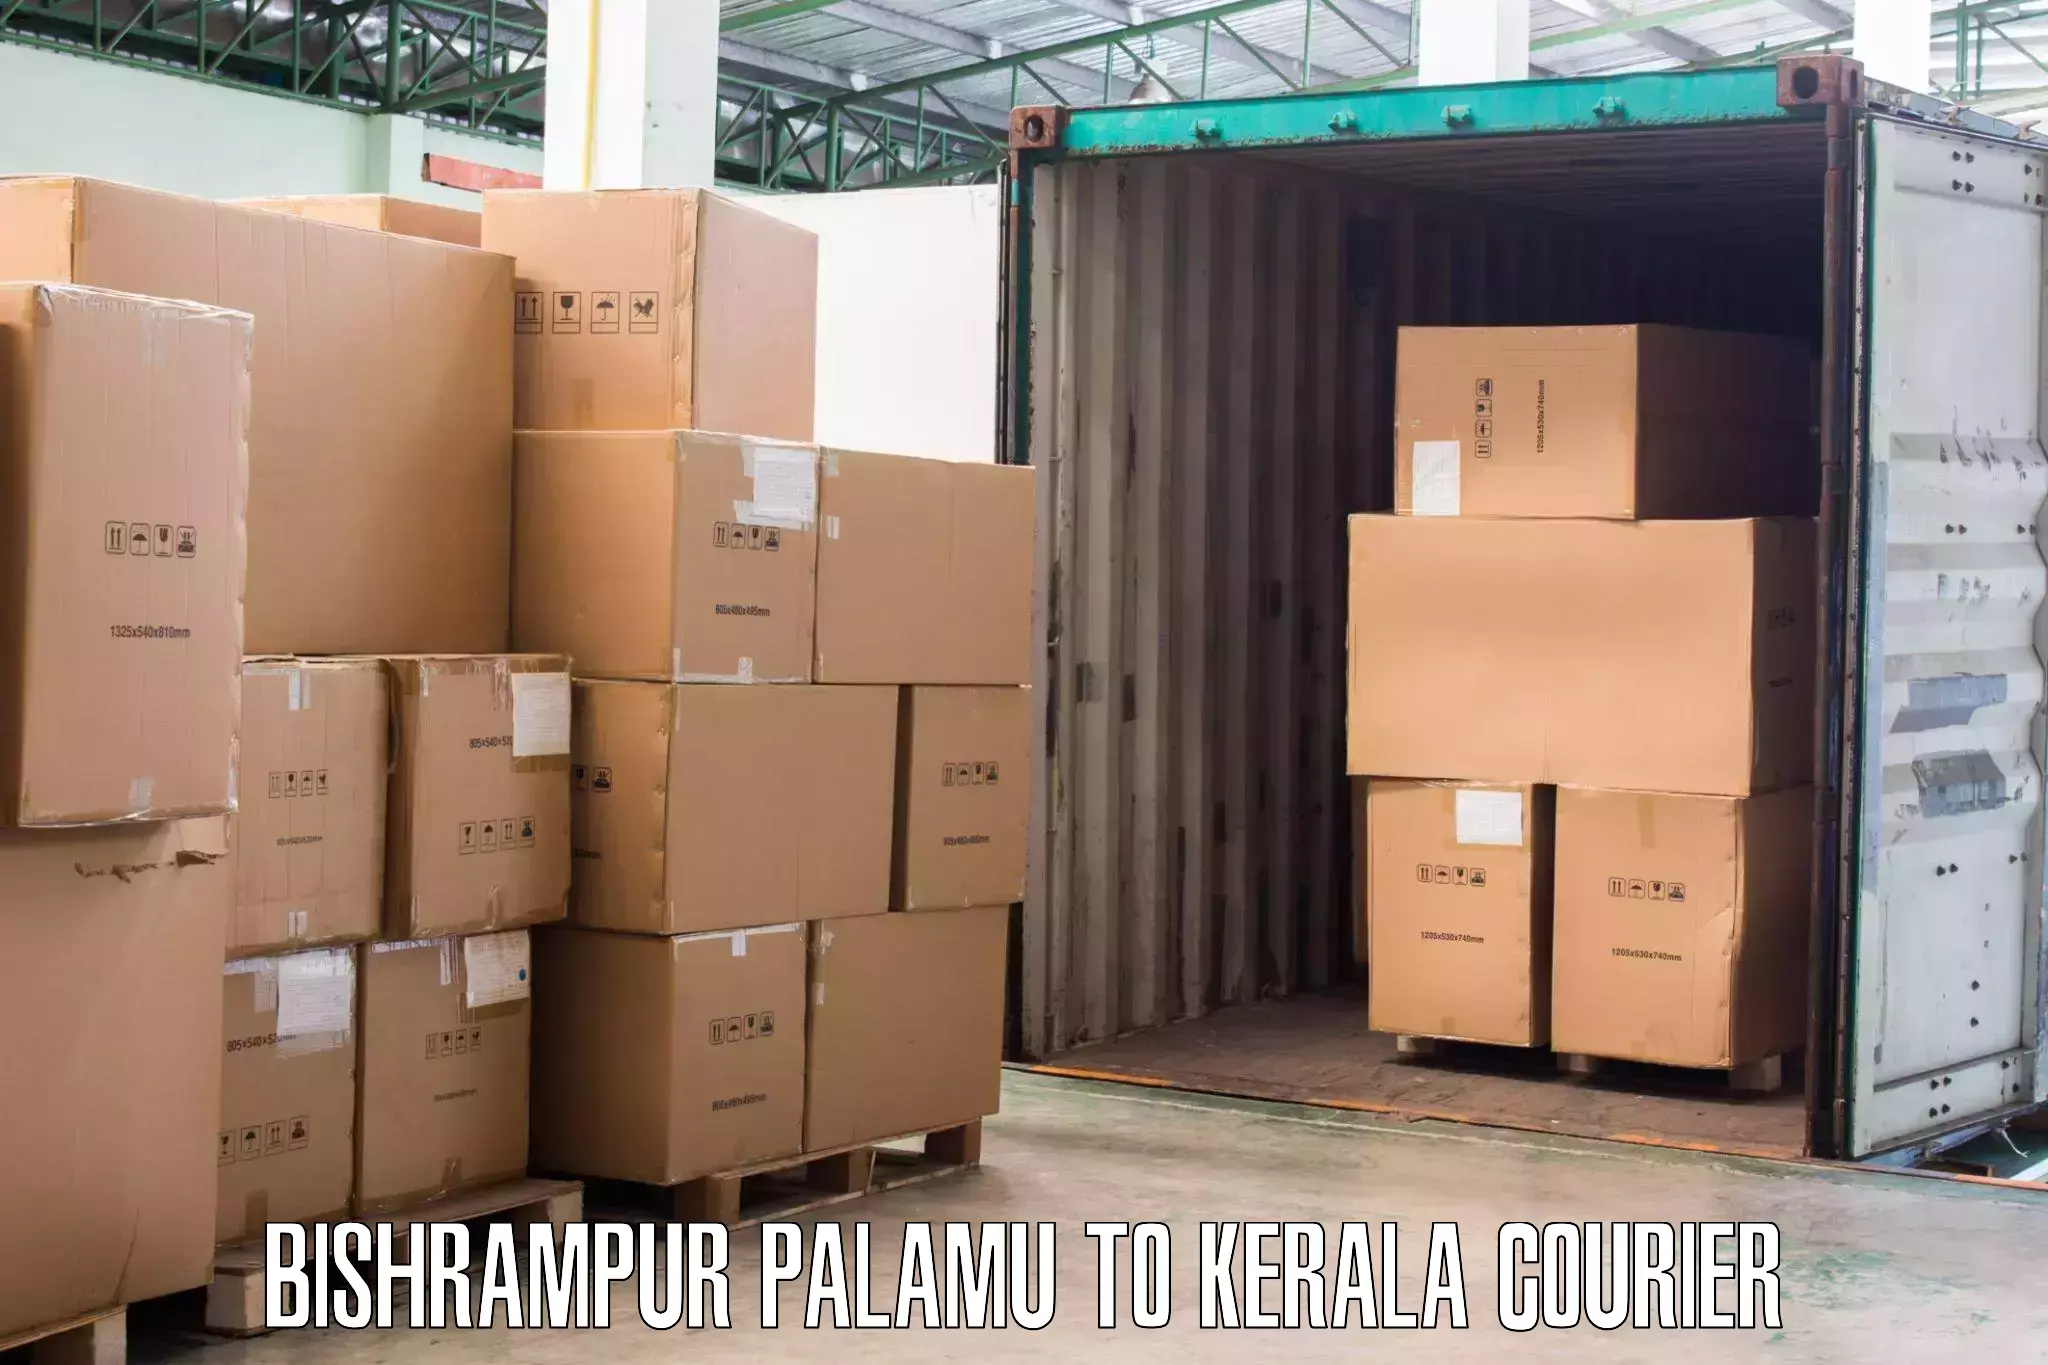 Trusted furniture movers Bishrampur Palamu to Kalpetta